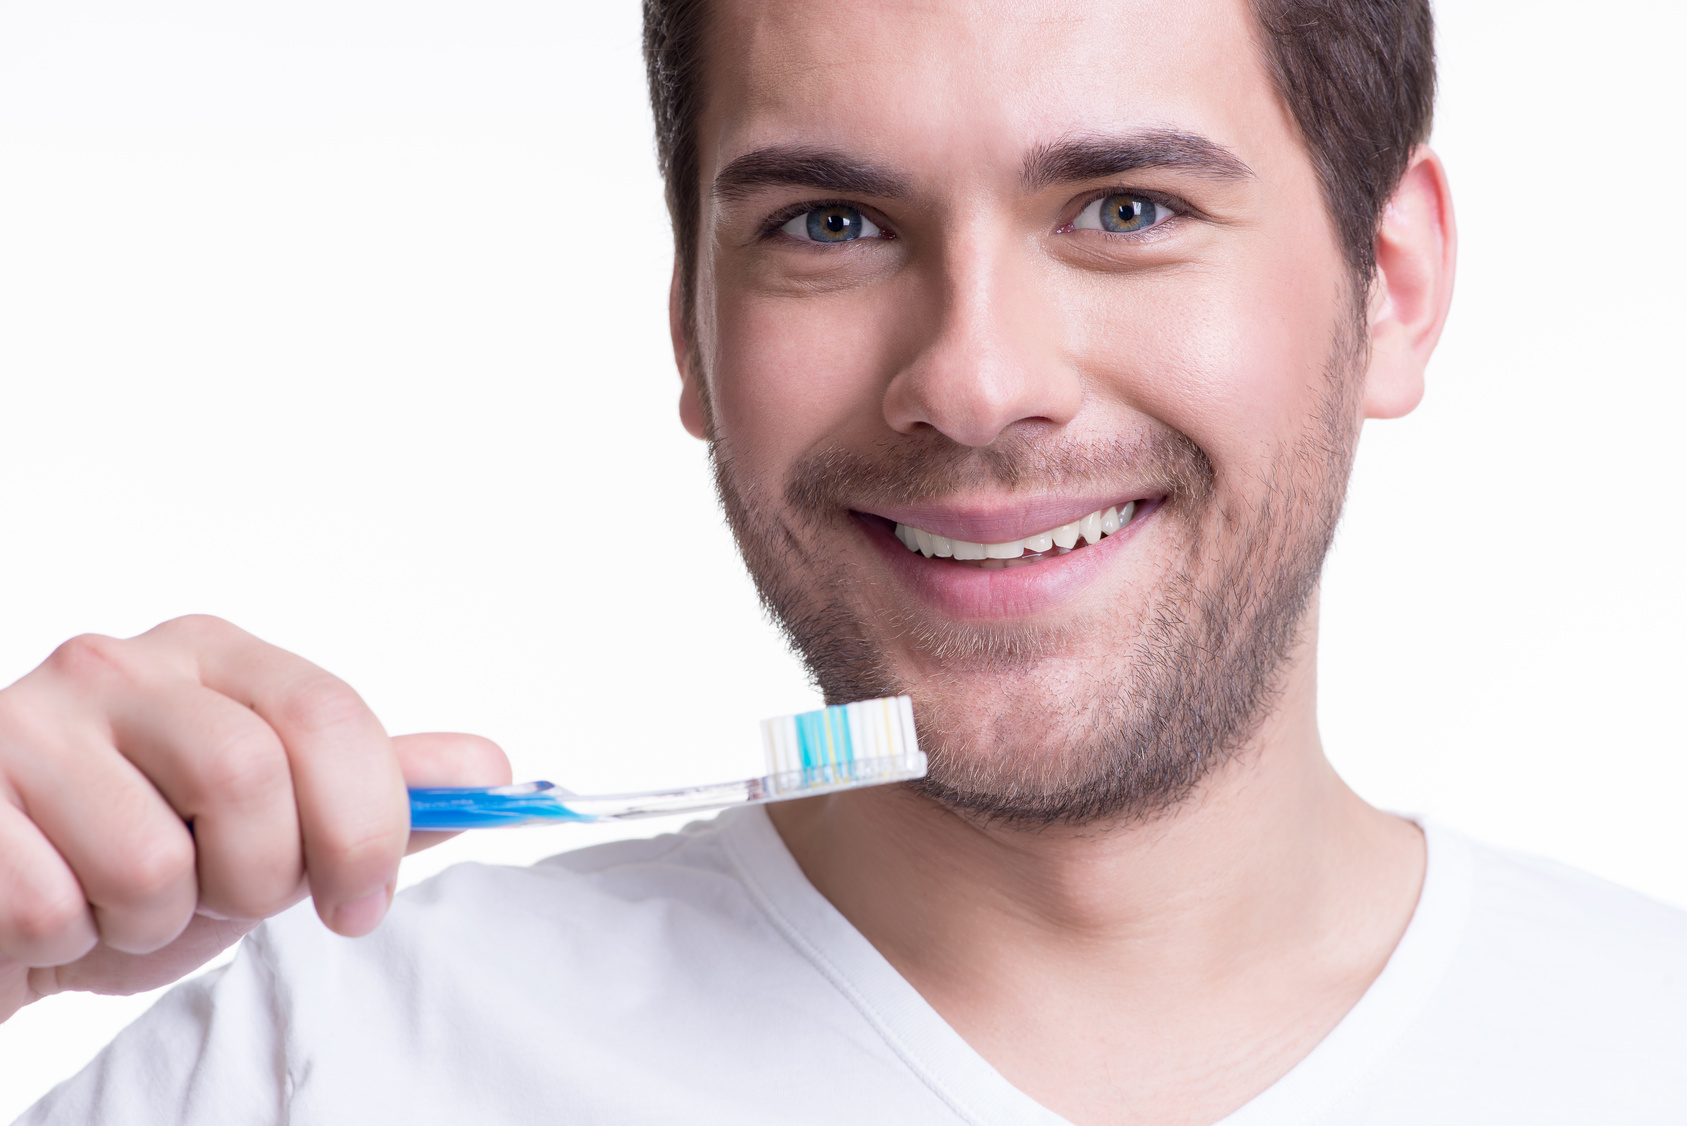 أيهما أفضل فرشاة الأسنان الناعمة أم الخشنة؟ ومتى يجب استبدالها؟